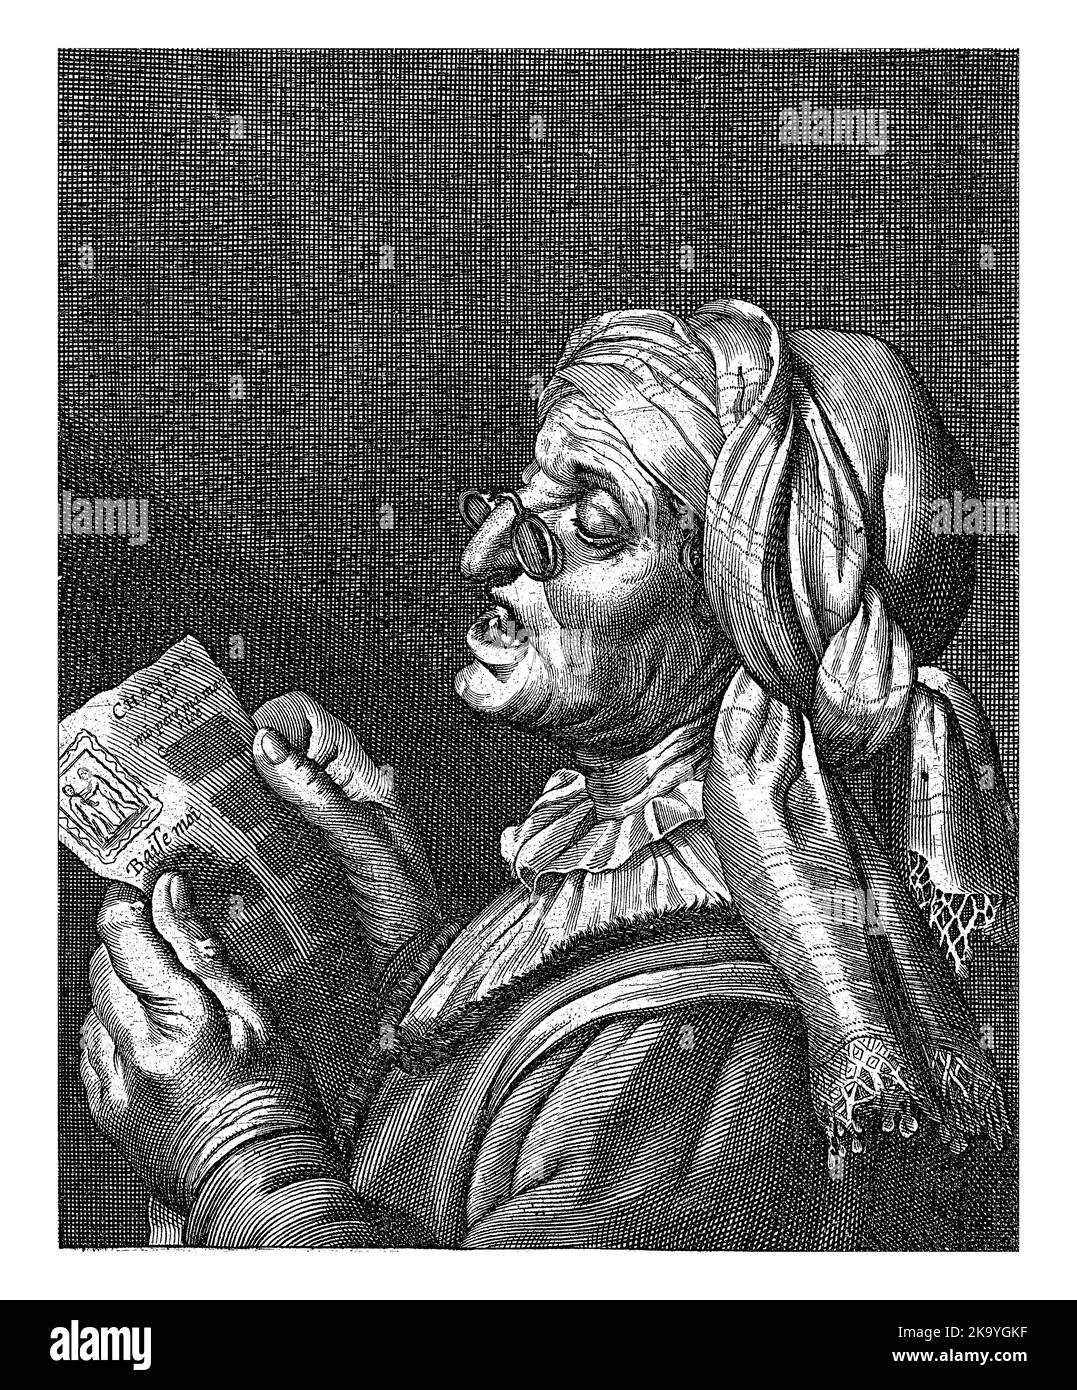 La vieille femme avec des lunettes sur son nez crocheté chante une chanson qu'elle lit d'une feuille de papier devant elle. Verset français dans la marge inférieure. Banque D'Images